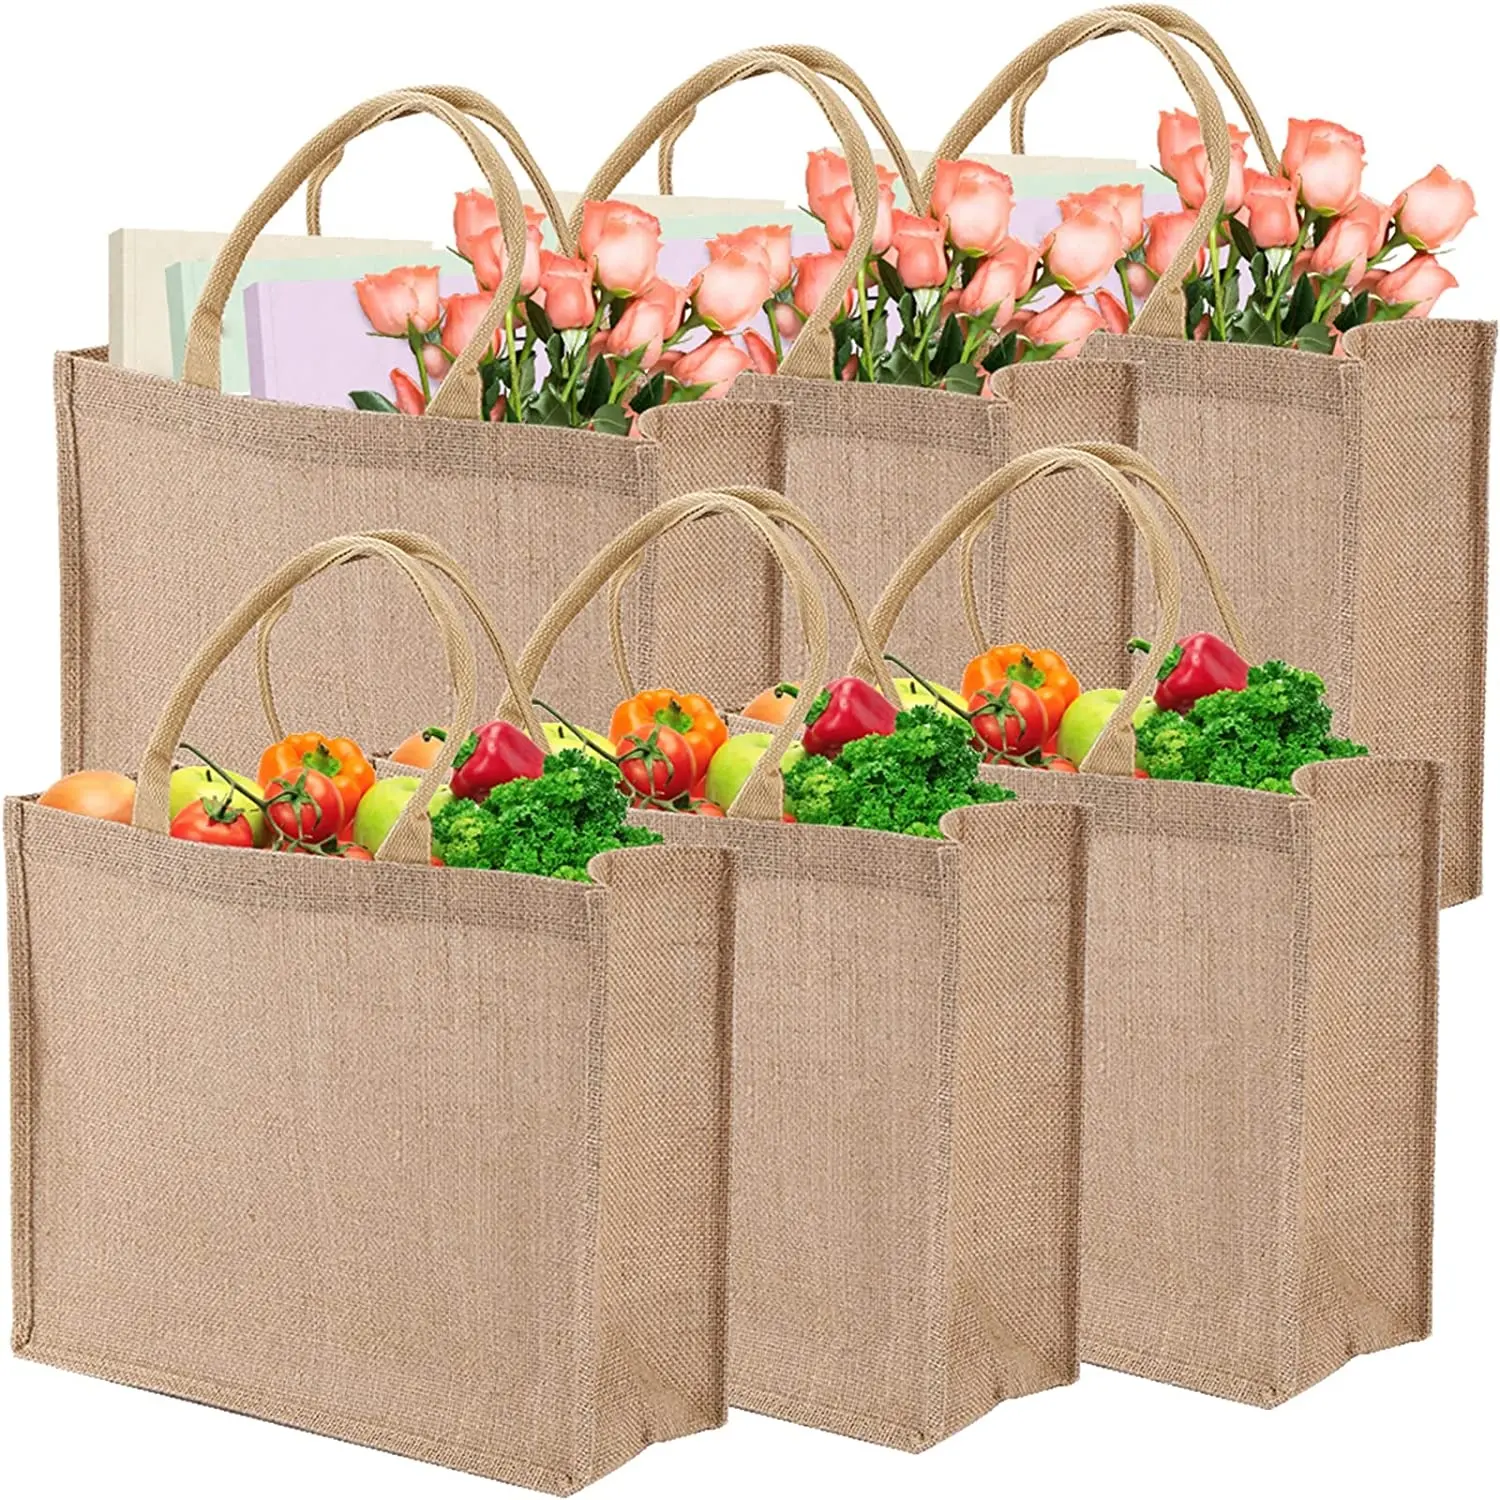 KAISEN Wholesale Jute Tote Bags With Custom Printed Logo Jute Shopping Bag Reusable Natural Burlap Carry Jute Bag